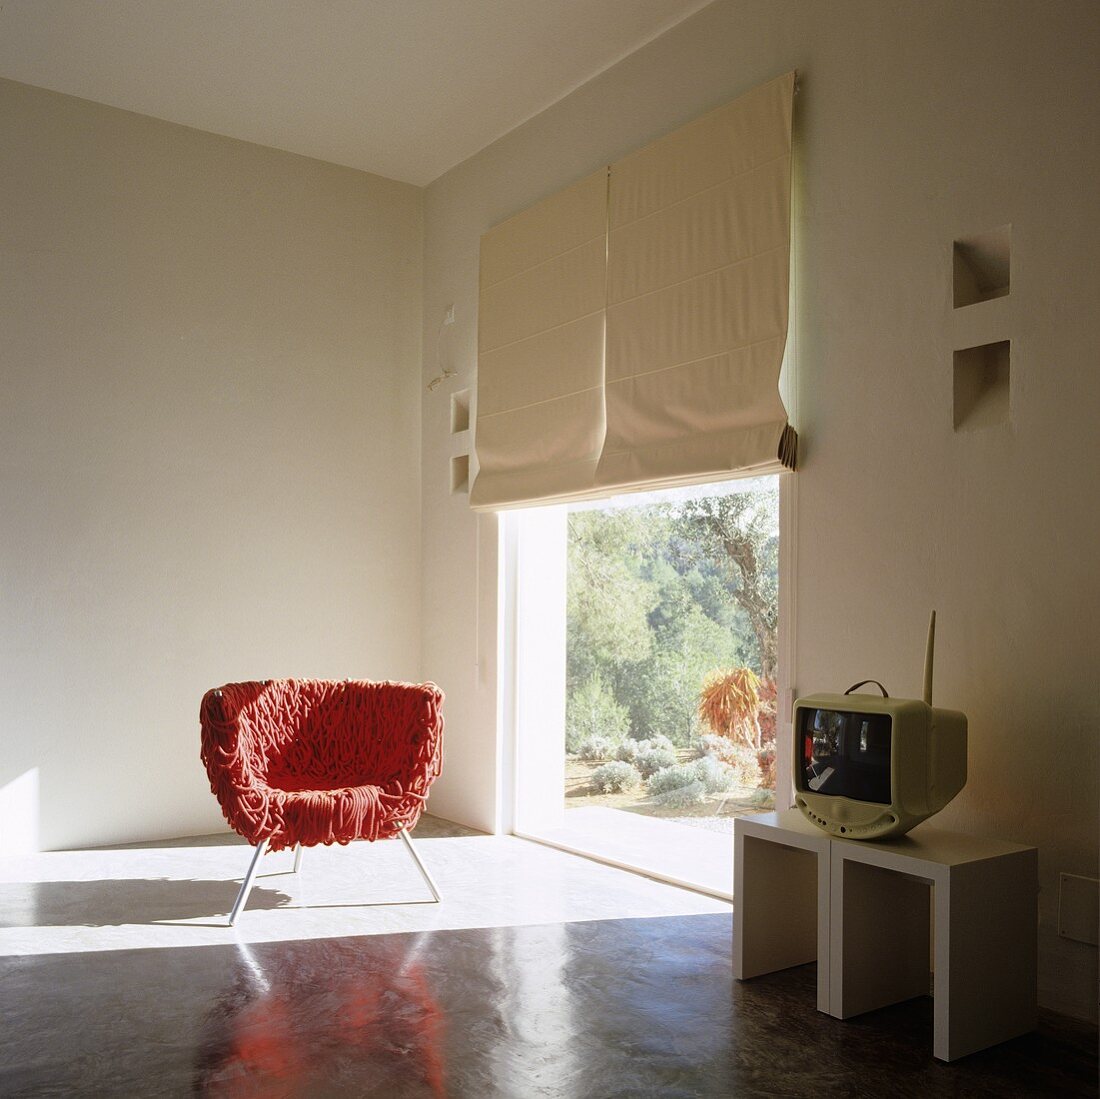 Roter zotteliger Stuhl im Lichteinfall eines raumhohen Fensters im Designerwohnraum